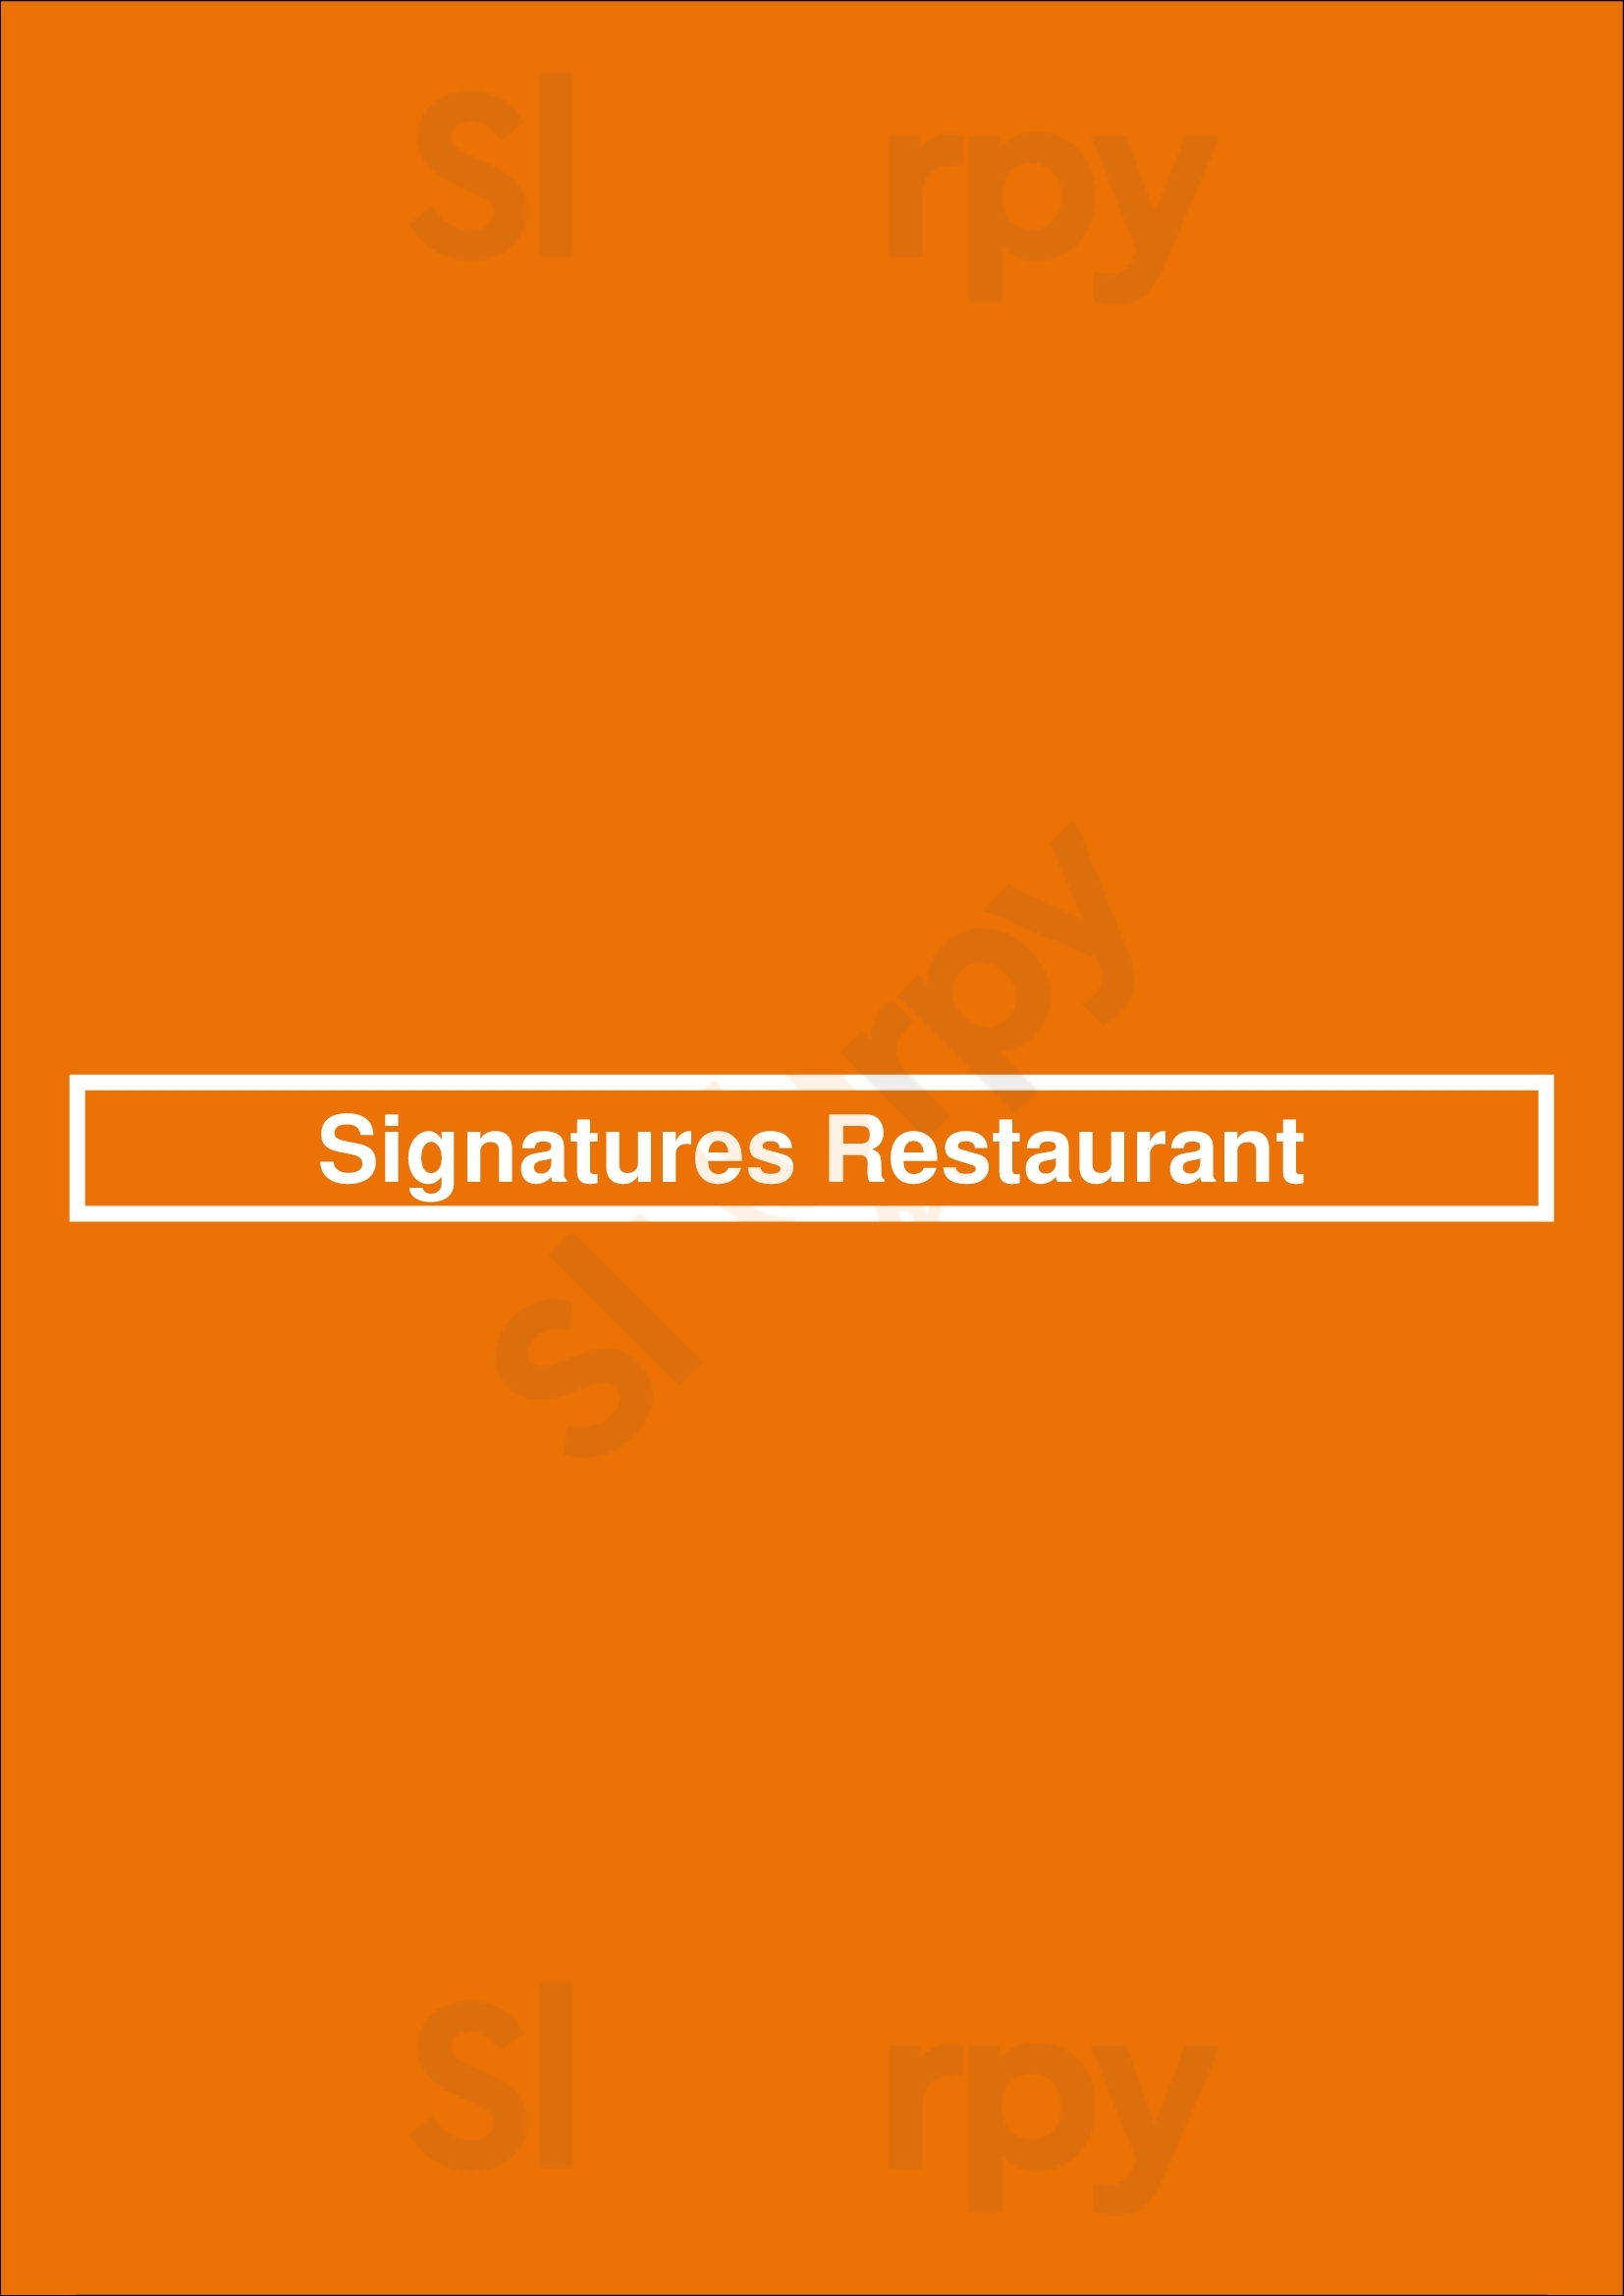 Signatures Restaurant Toronto Menu - 1